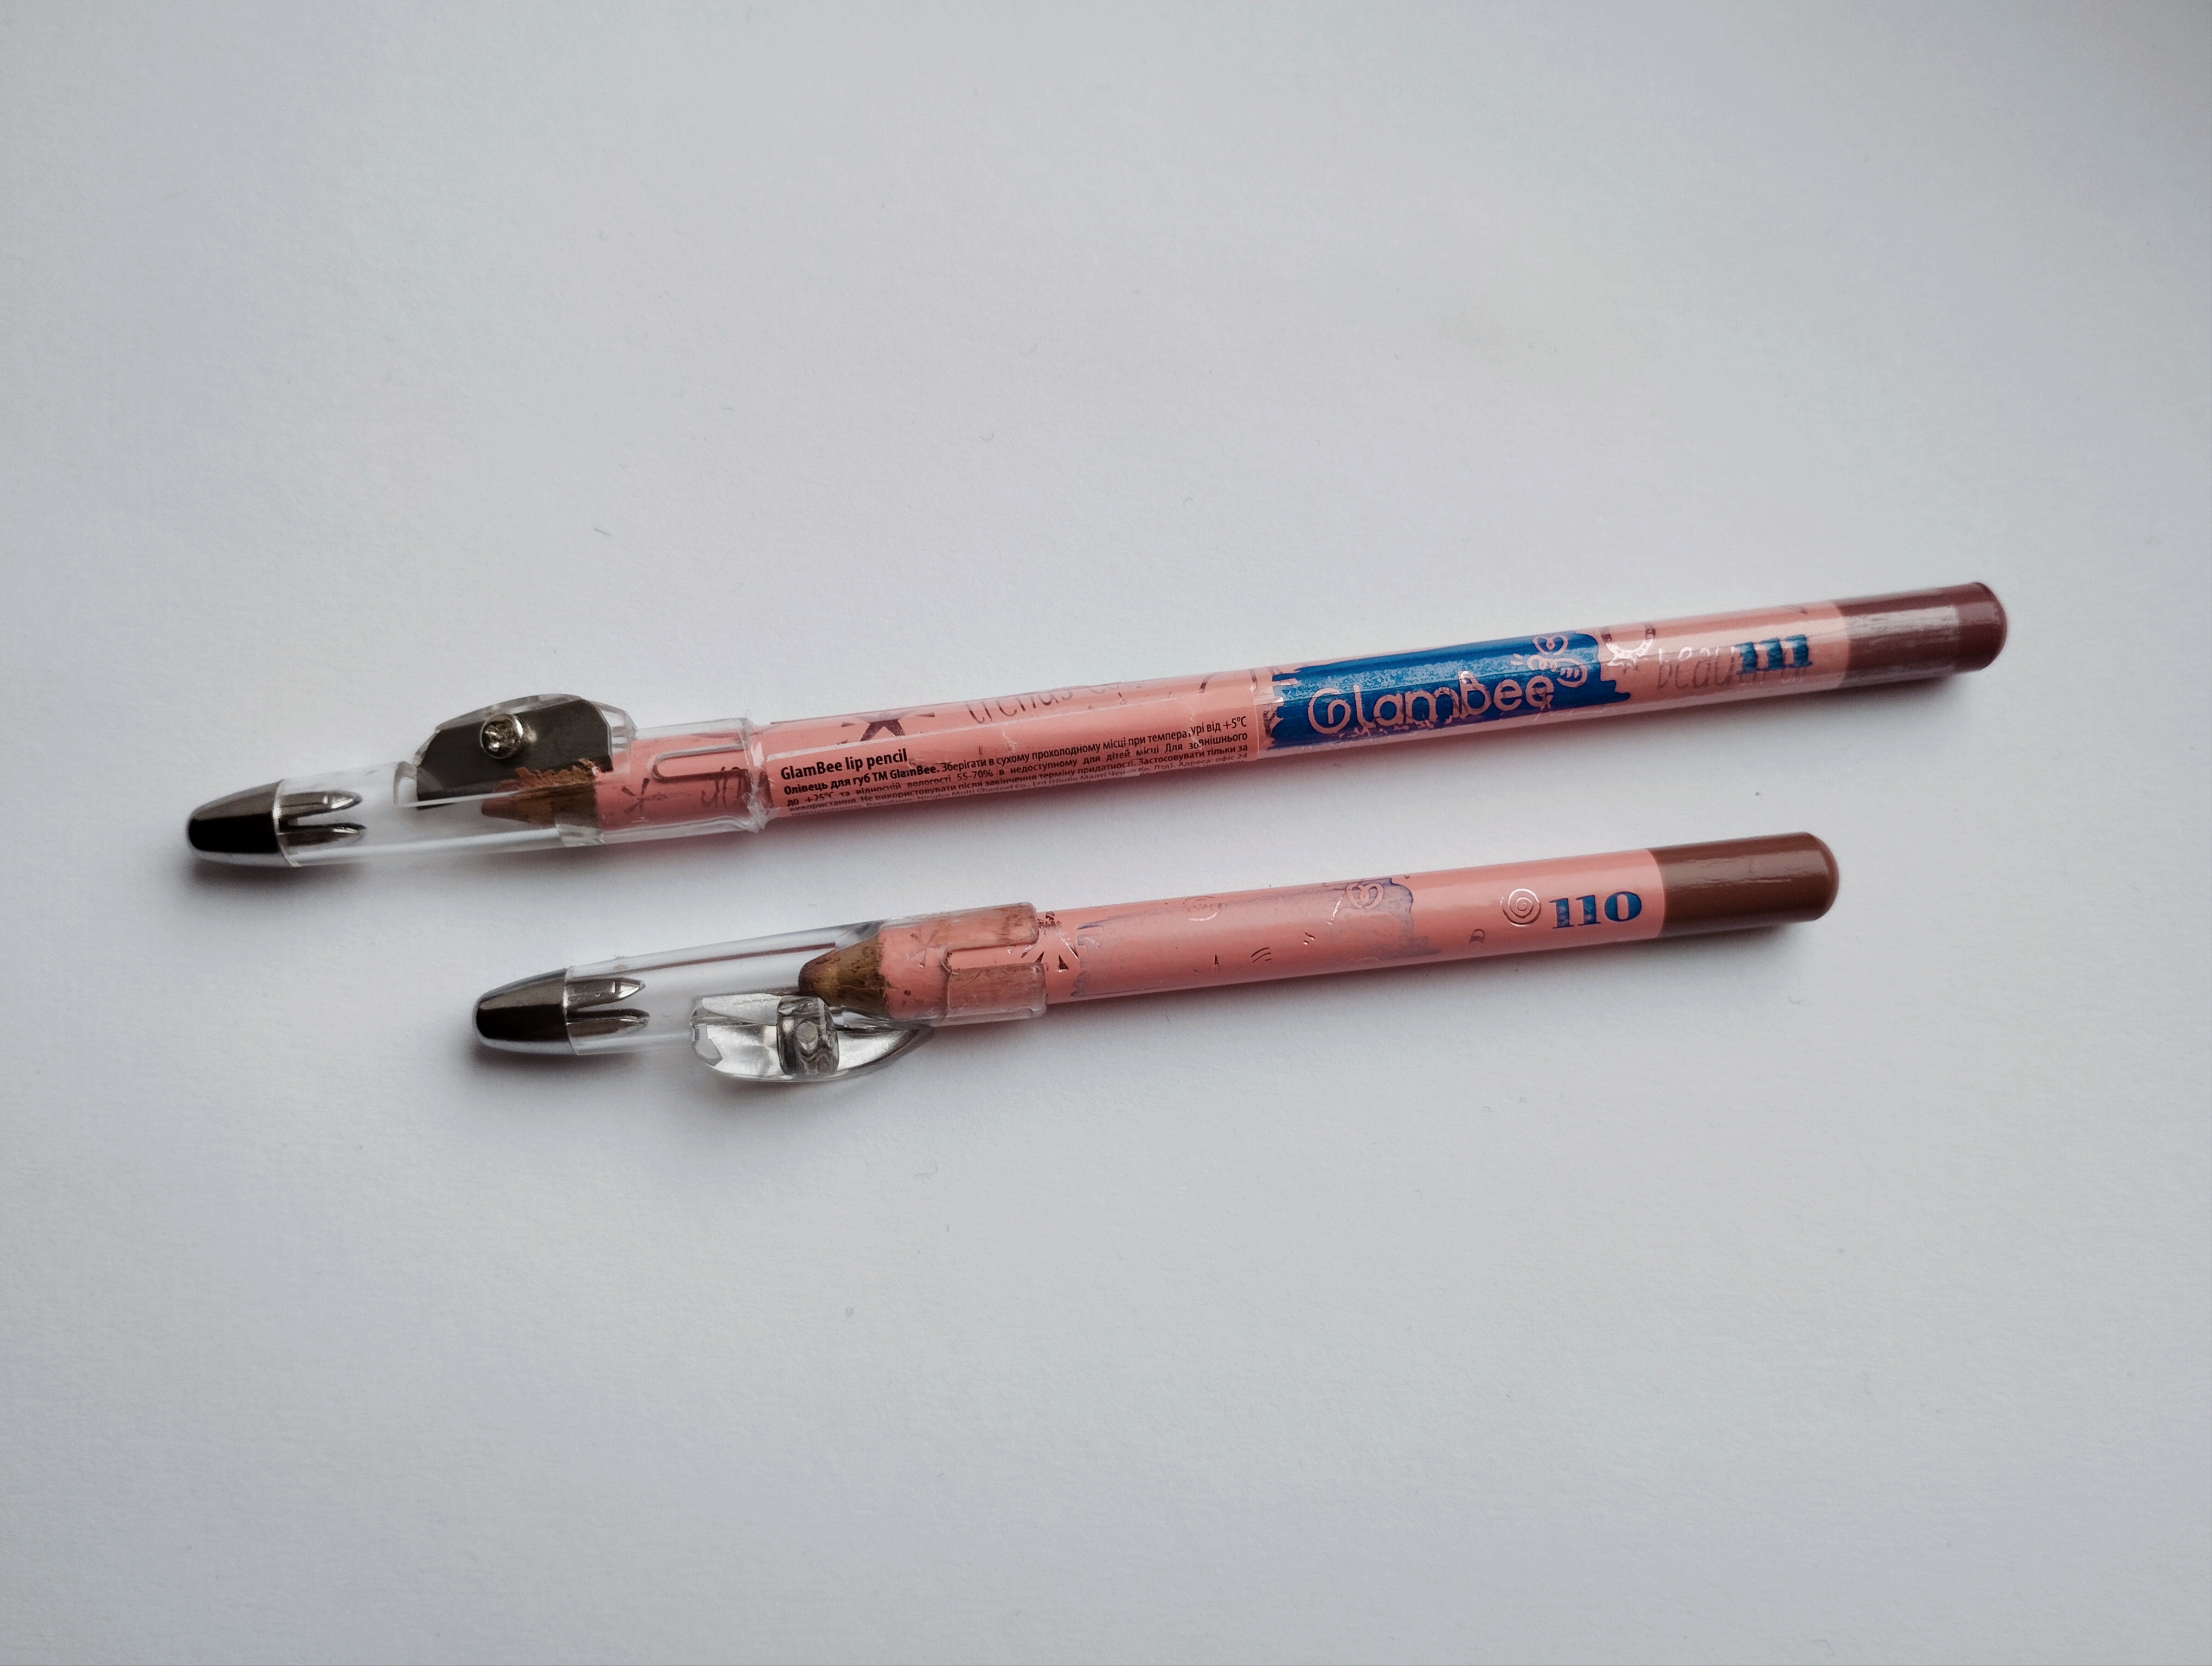 Lip combo з олівцями від Glambee 110+111